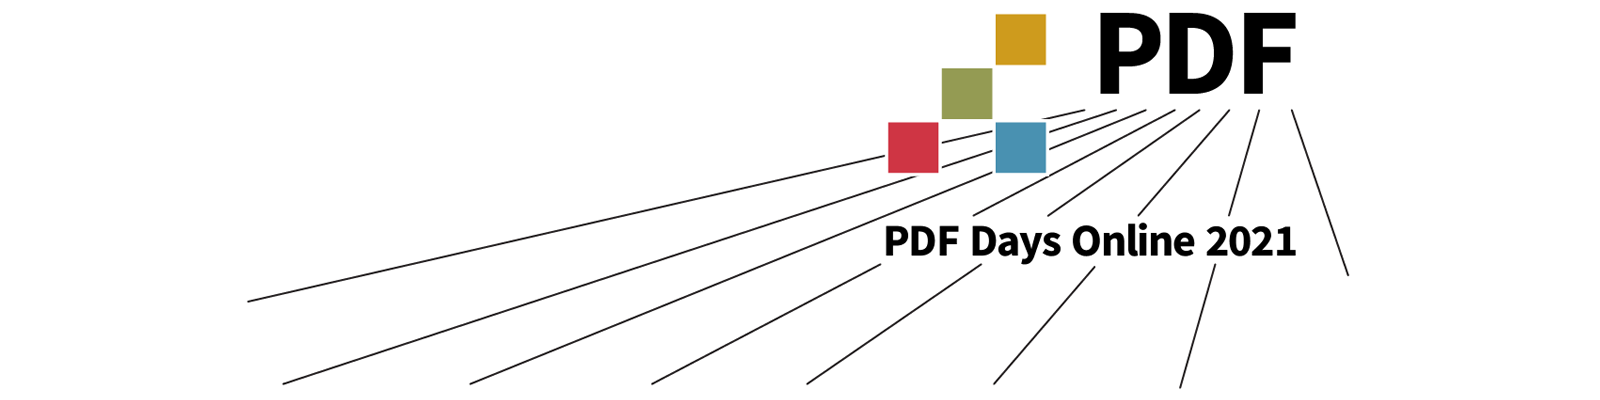 PDF Days Online 2021 banner